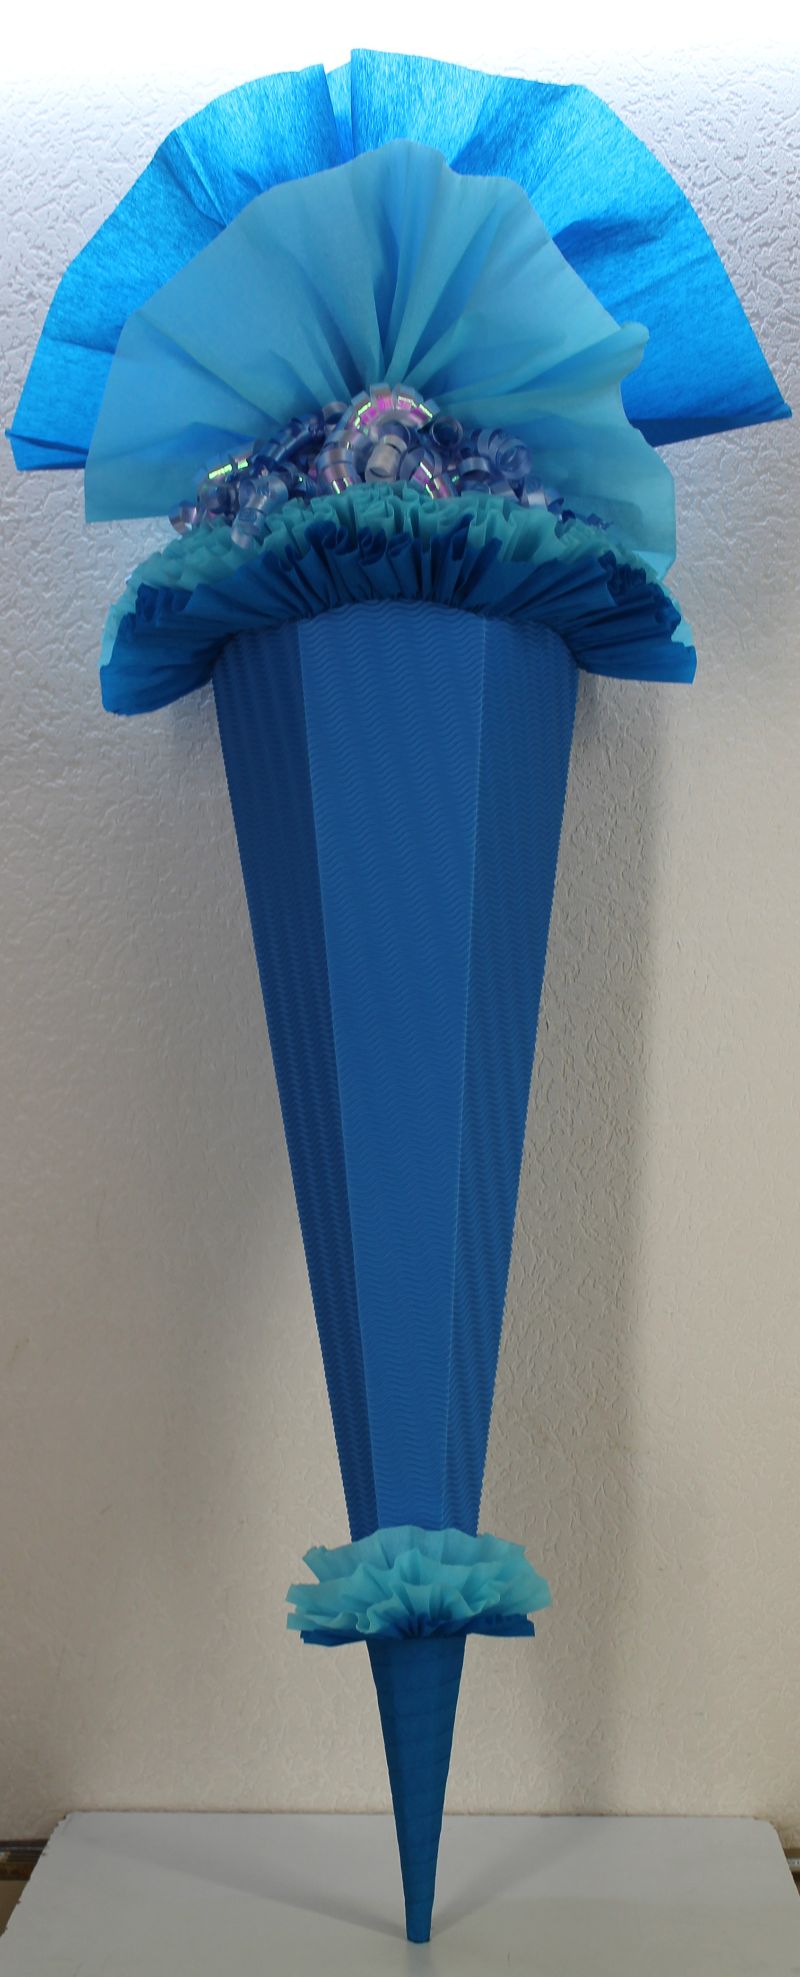  - Schultüte Zuckertüte Rohling zum selbst verzieren Rohling 70 75 80 85 90 100 cm / 1m für Jungen HANDARBEIT blau hellblau